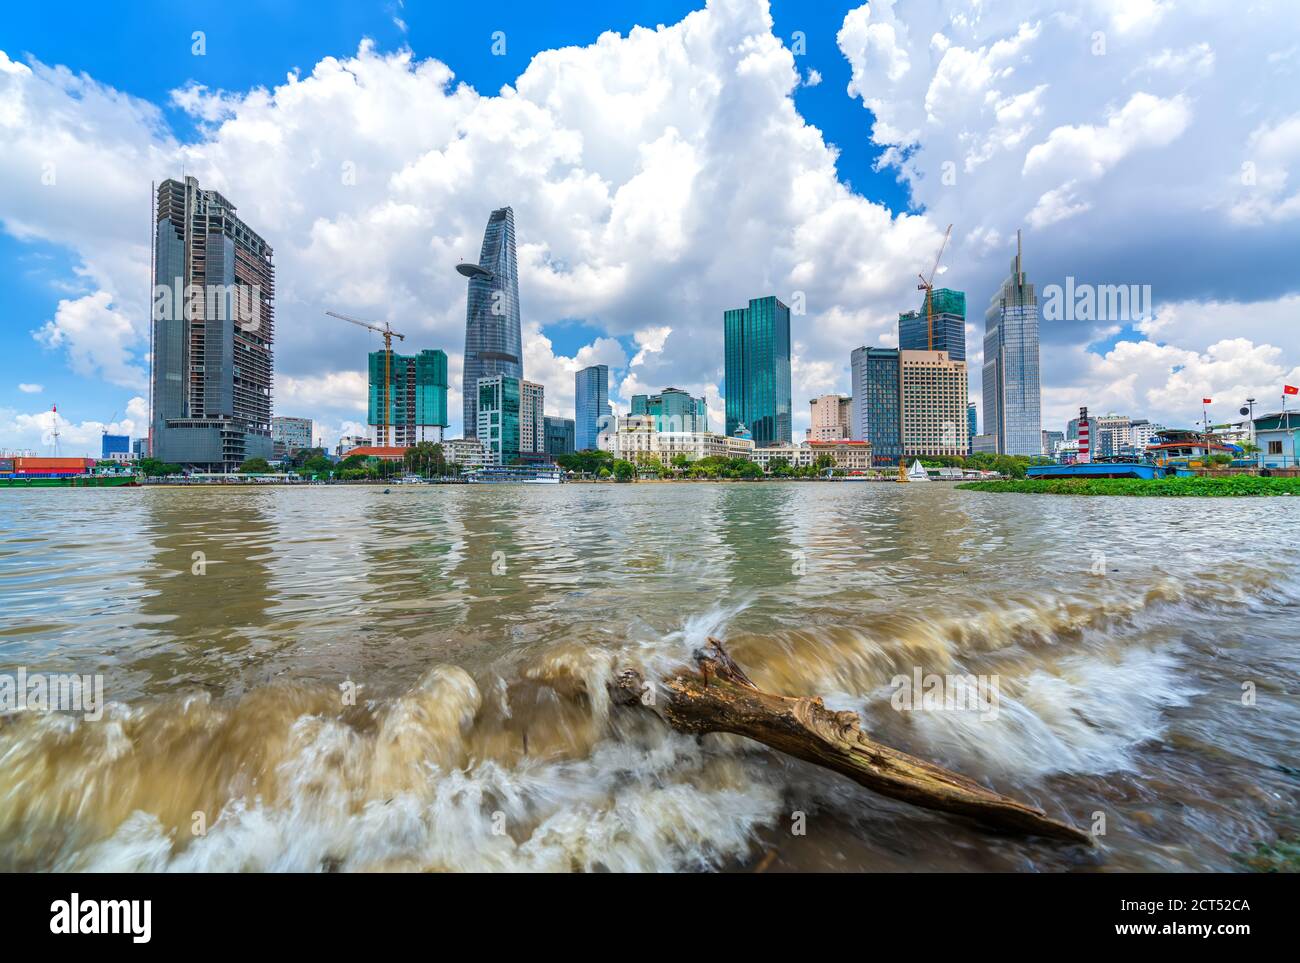 Rascacielos a lo largo del río con torres de oficinas de arquitectura, hoteles, centro cultural y de desarrollo comercial país más en la ciudad de Ho Chi Minh, Vietnam Foto de stock